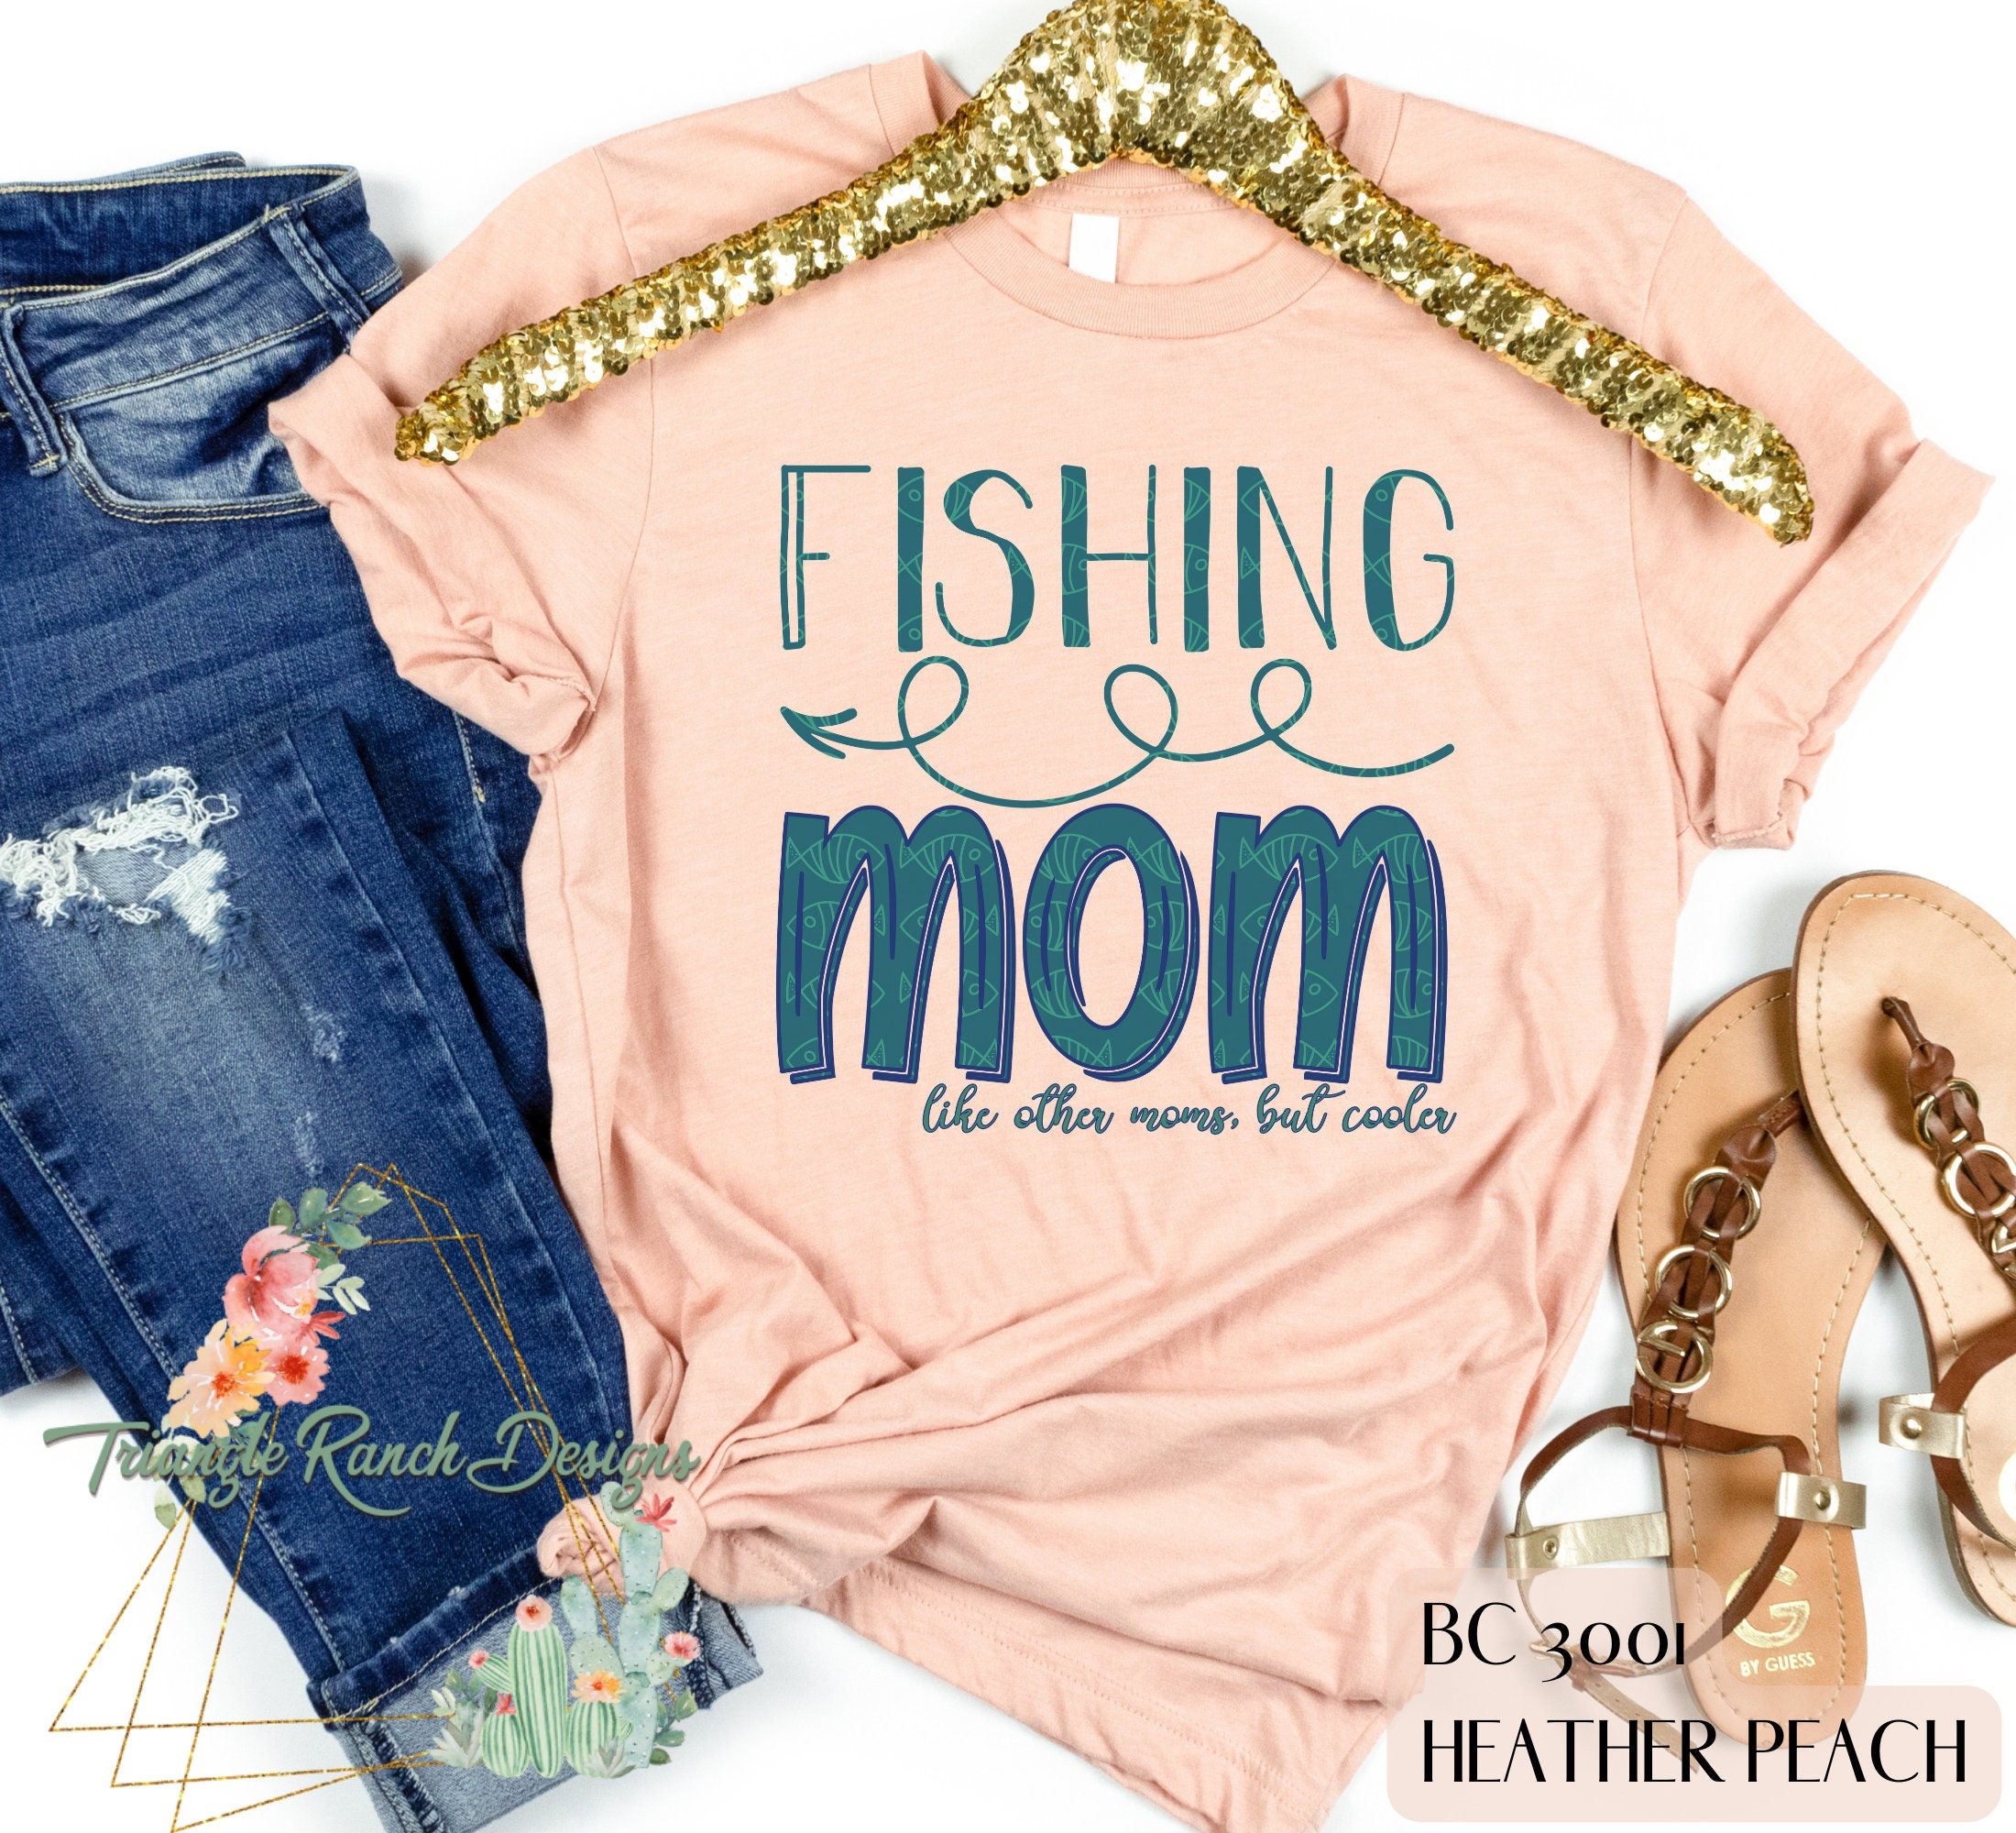 Fishing Mom Shirt, Fishing Shirts for Women, Fishing Shirts